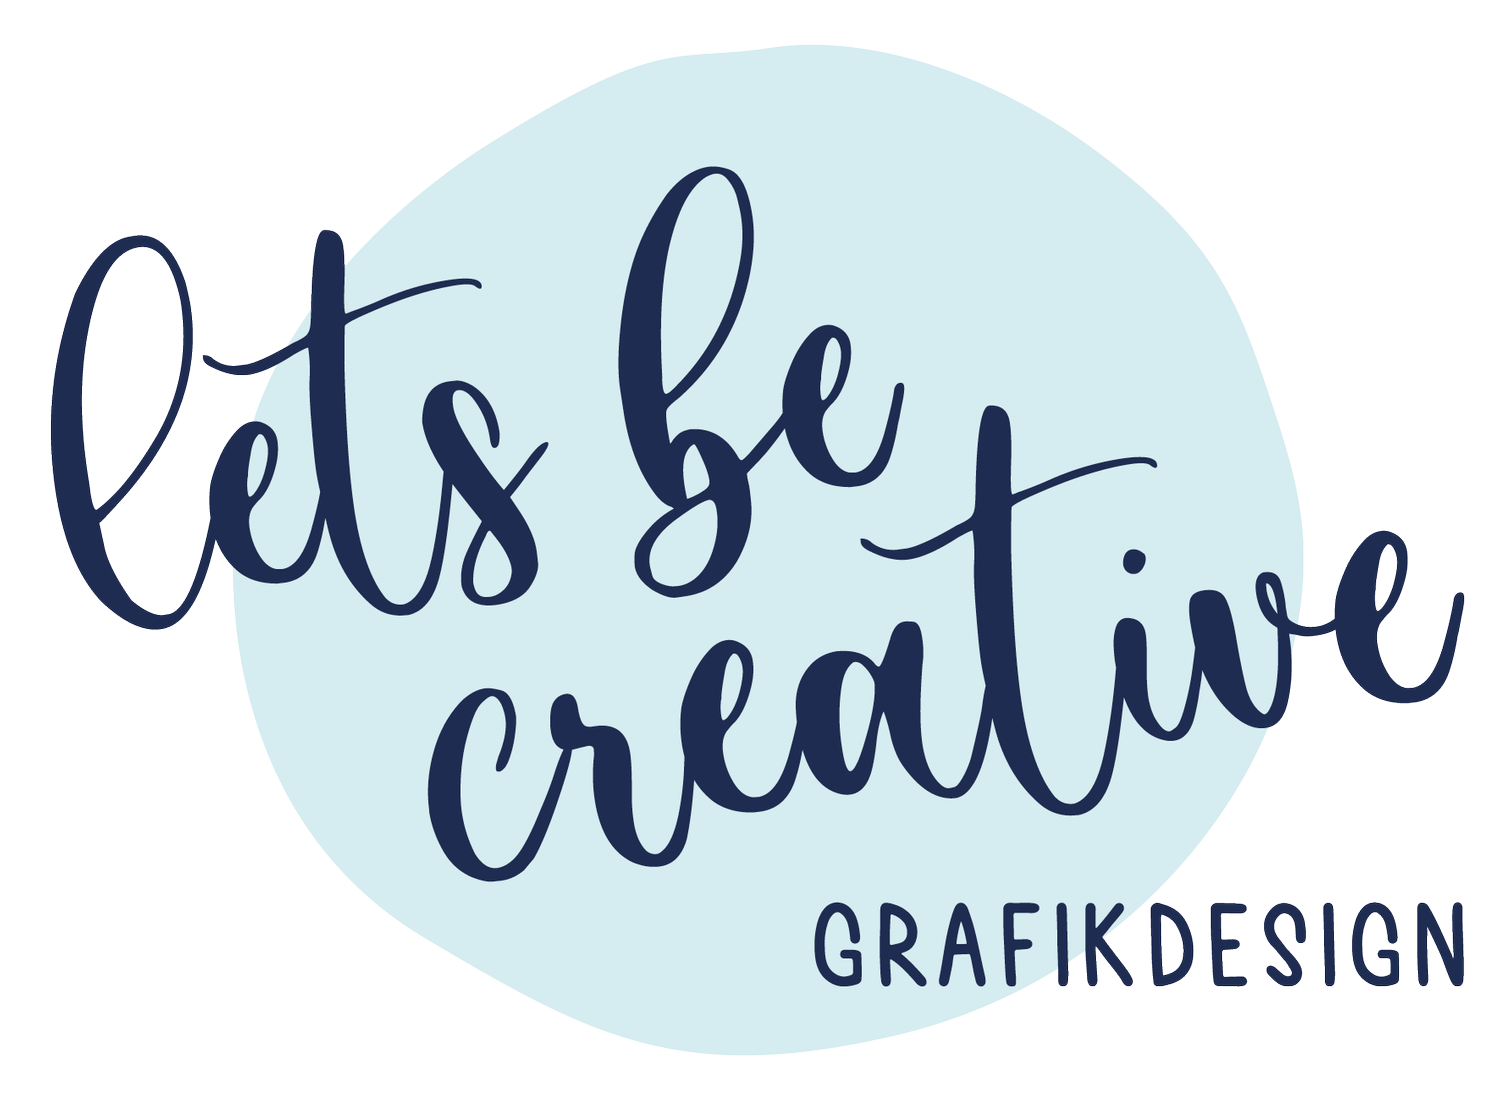 lets be creative - Grafikdesign